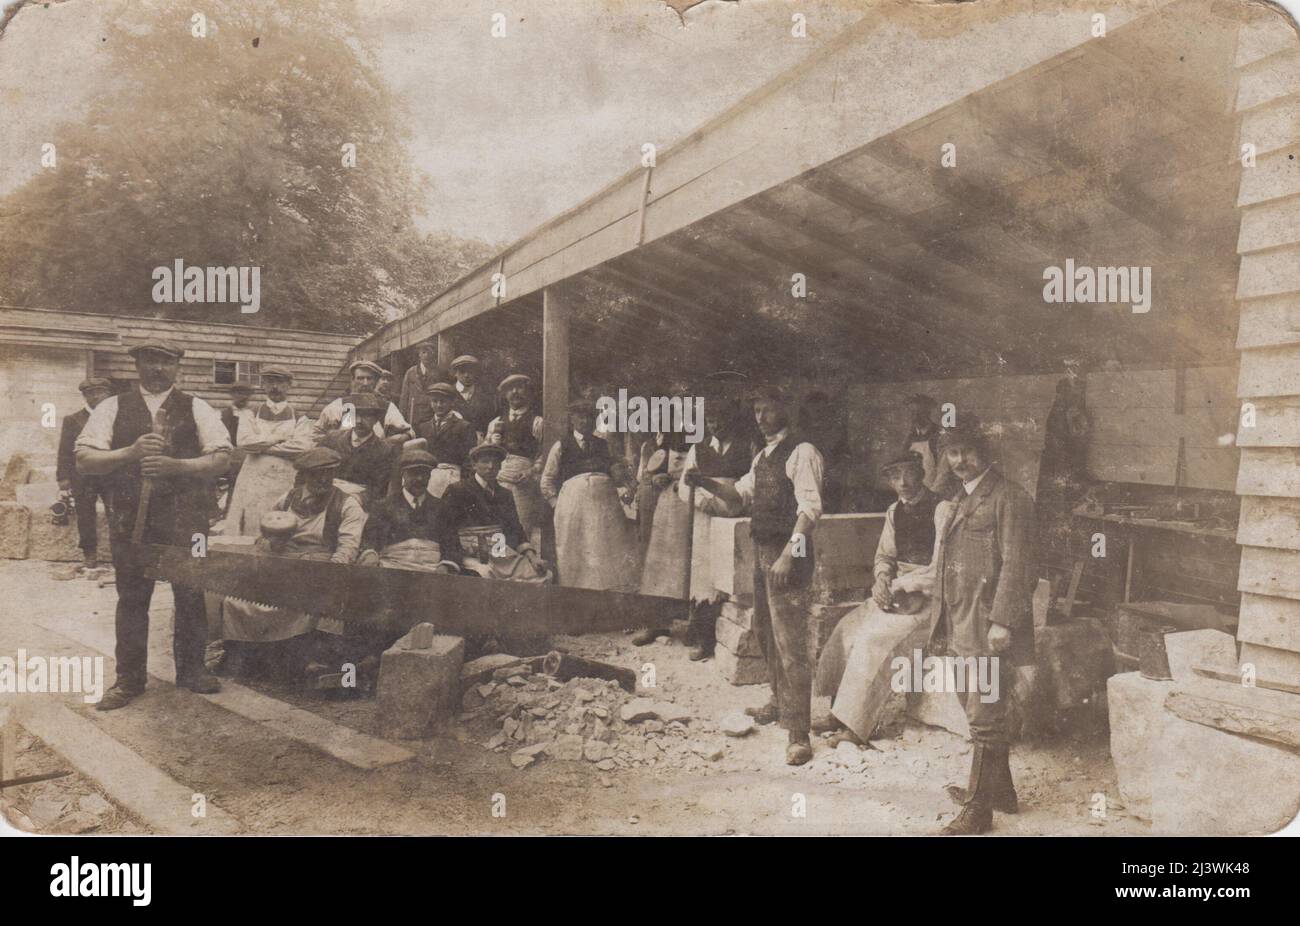 Foto von Steinmetzen in einem Hof, Anfang 20. Jahrhundert. Zwei Männer schneiden mit einer Frig-bob-Säge einen Steinblock, die anderen Männer stehen dahinter herum. Im Hintergrund sind Werkzeuge und Blöcke aus bearbeiteten Steinen zu sehen Stockfoto